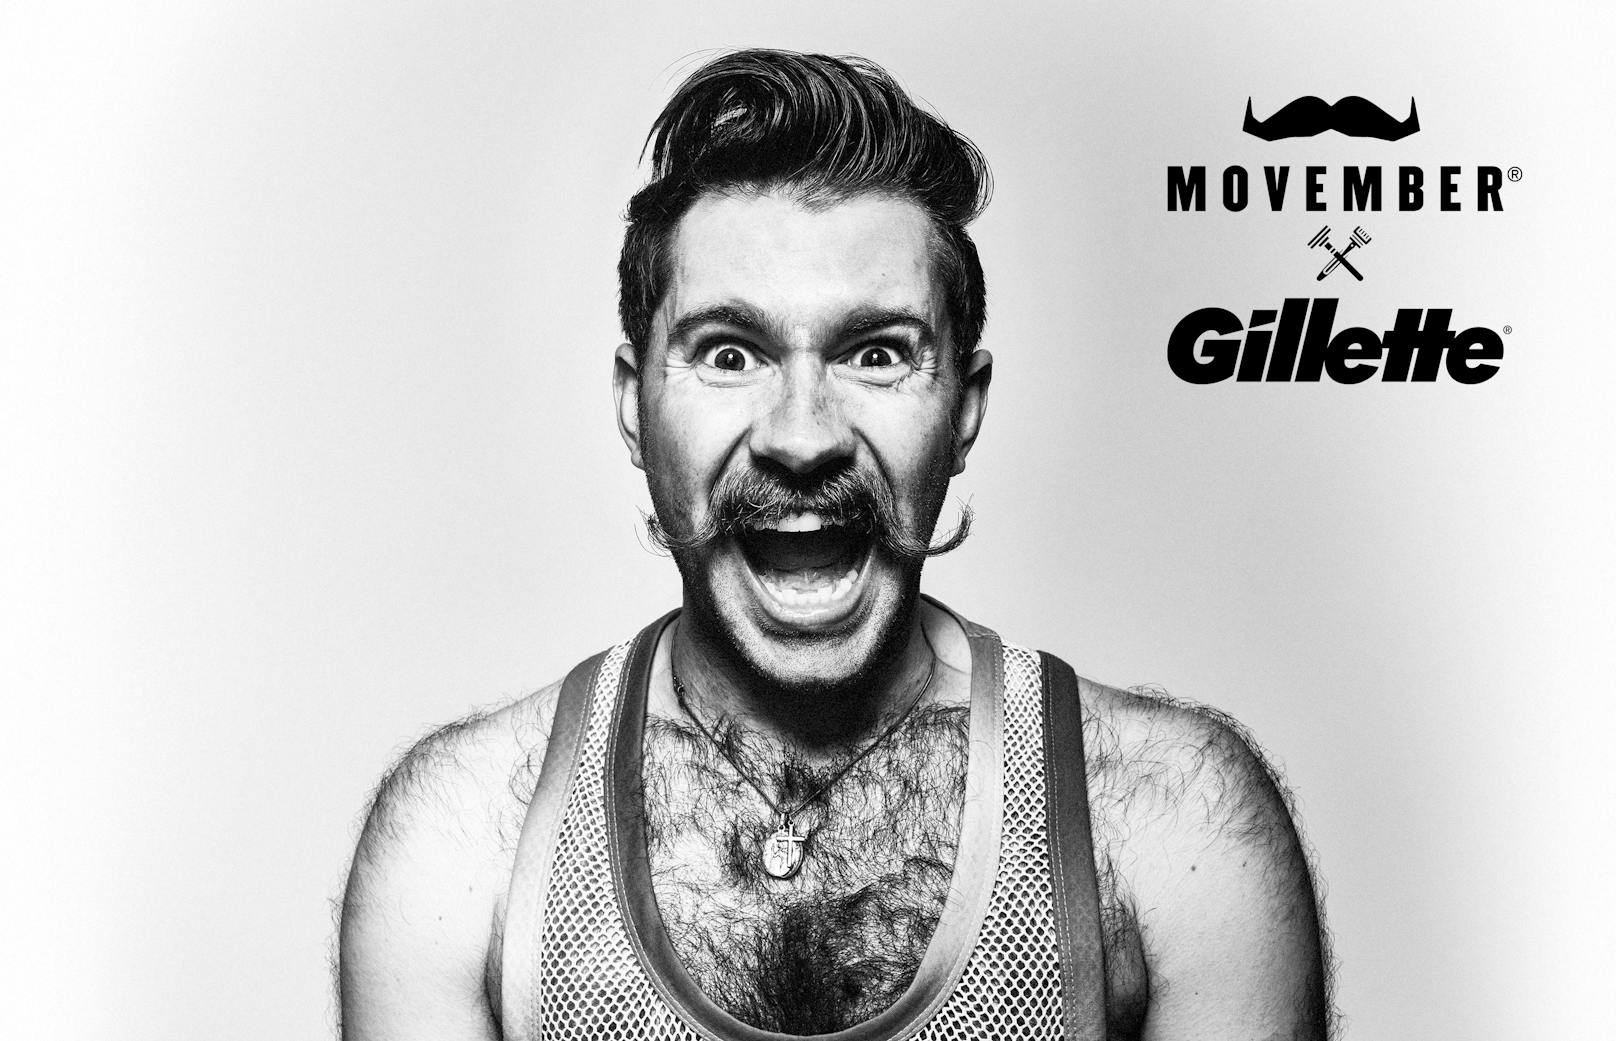 Männergesundheit zum Thema machen #MutZumMo: Gillette ist neuer Partner der Movember-Stiftung.